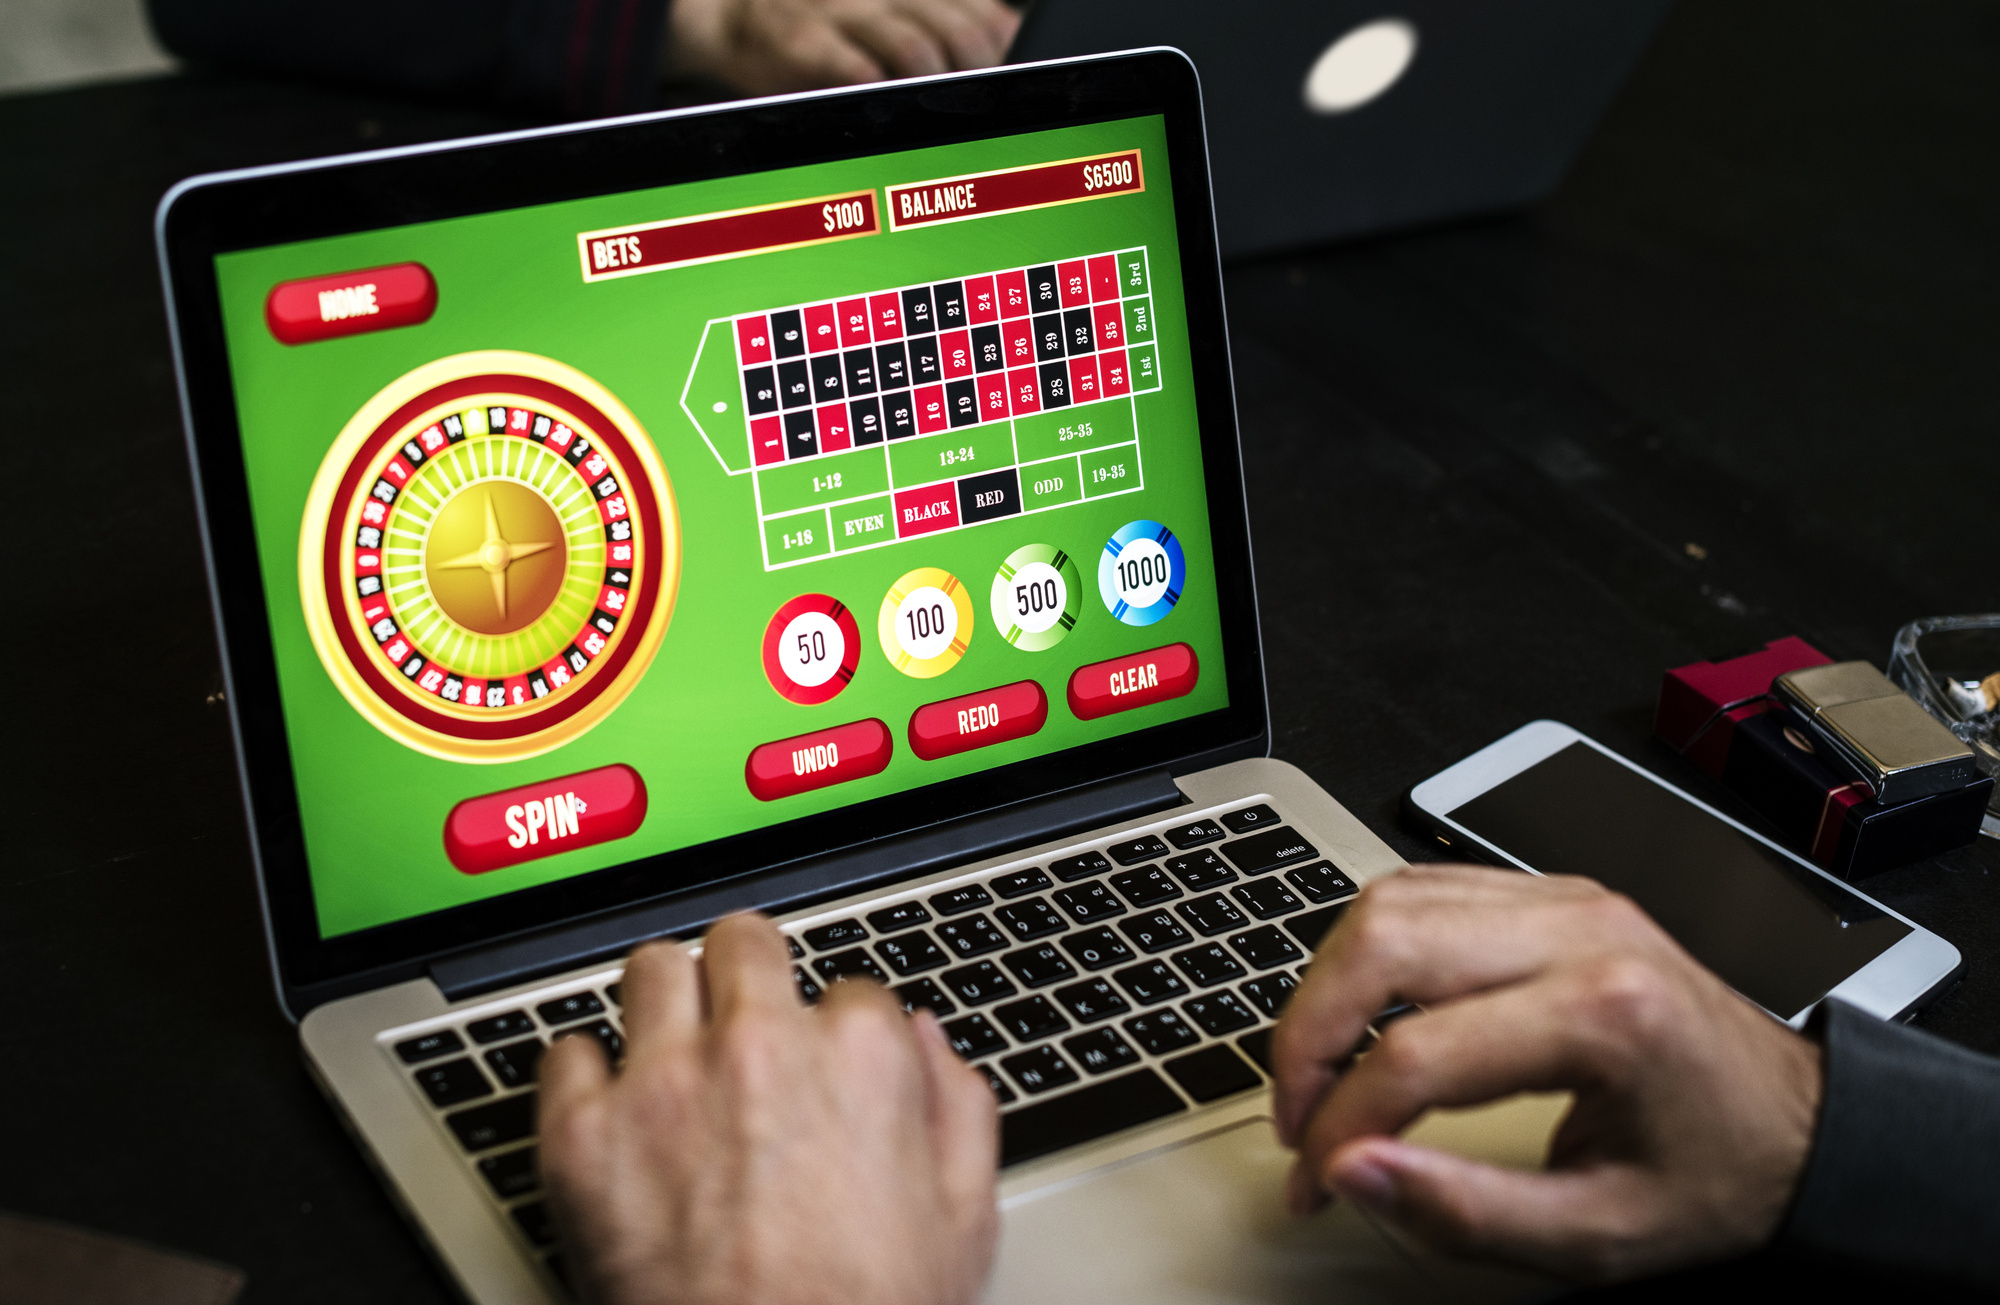 Комп казино играть вигровые автоматы онлайнi